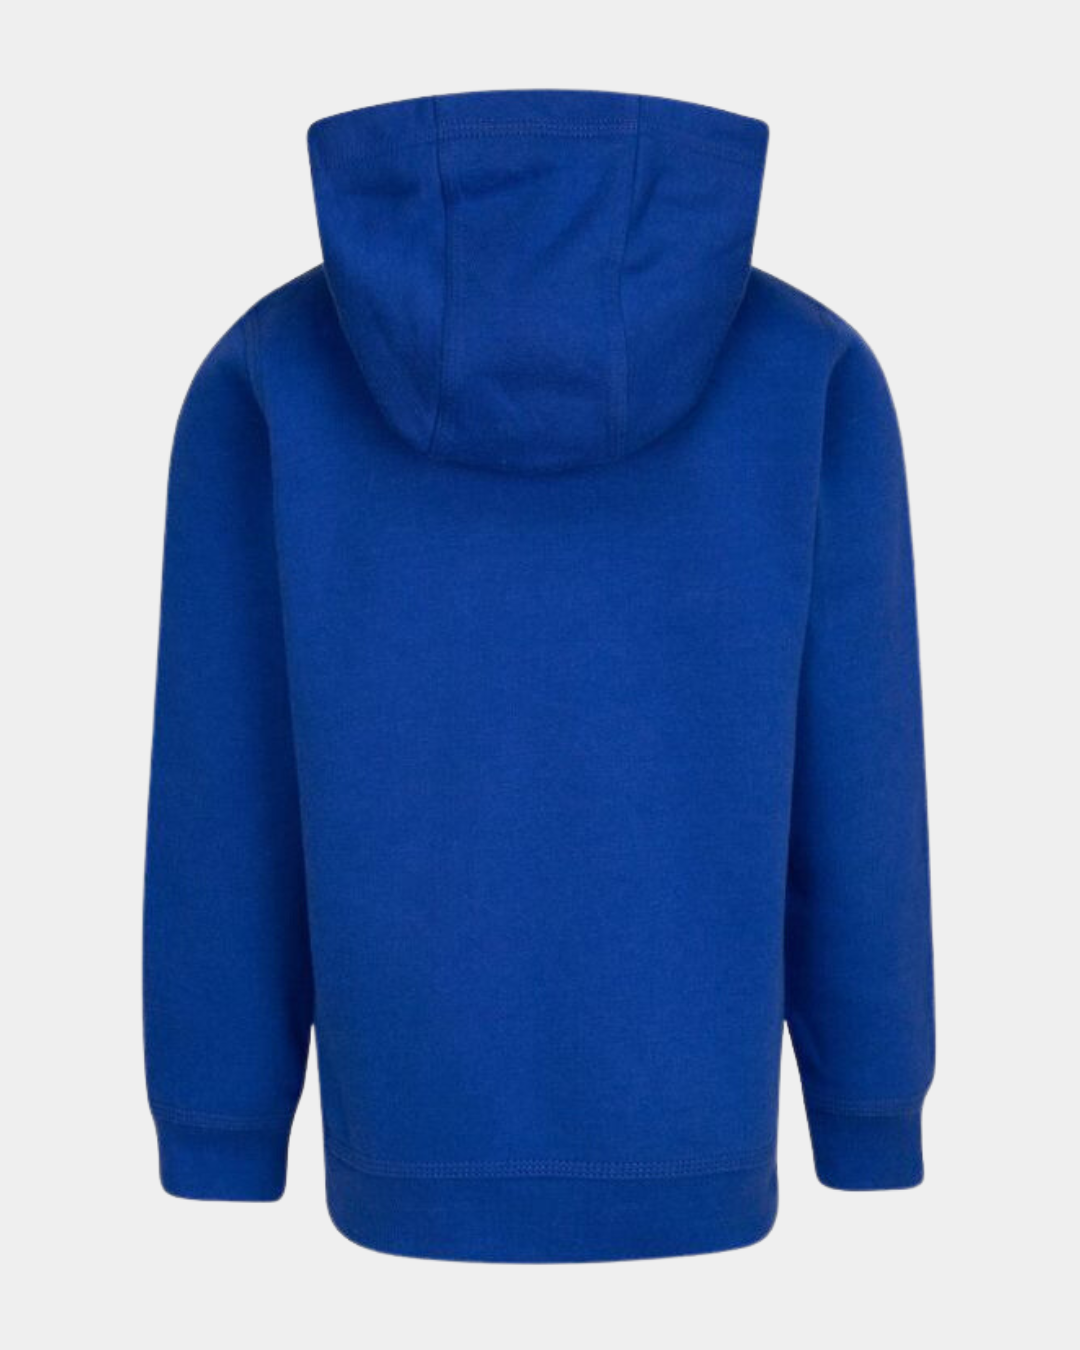 Nike Club Fleece Kinder-Sweatshirt - Blau/Weiß/Grau